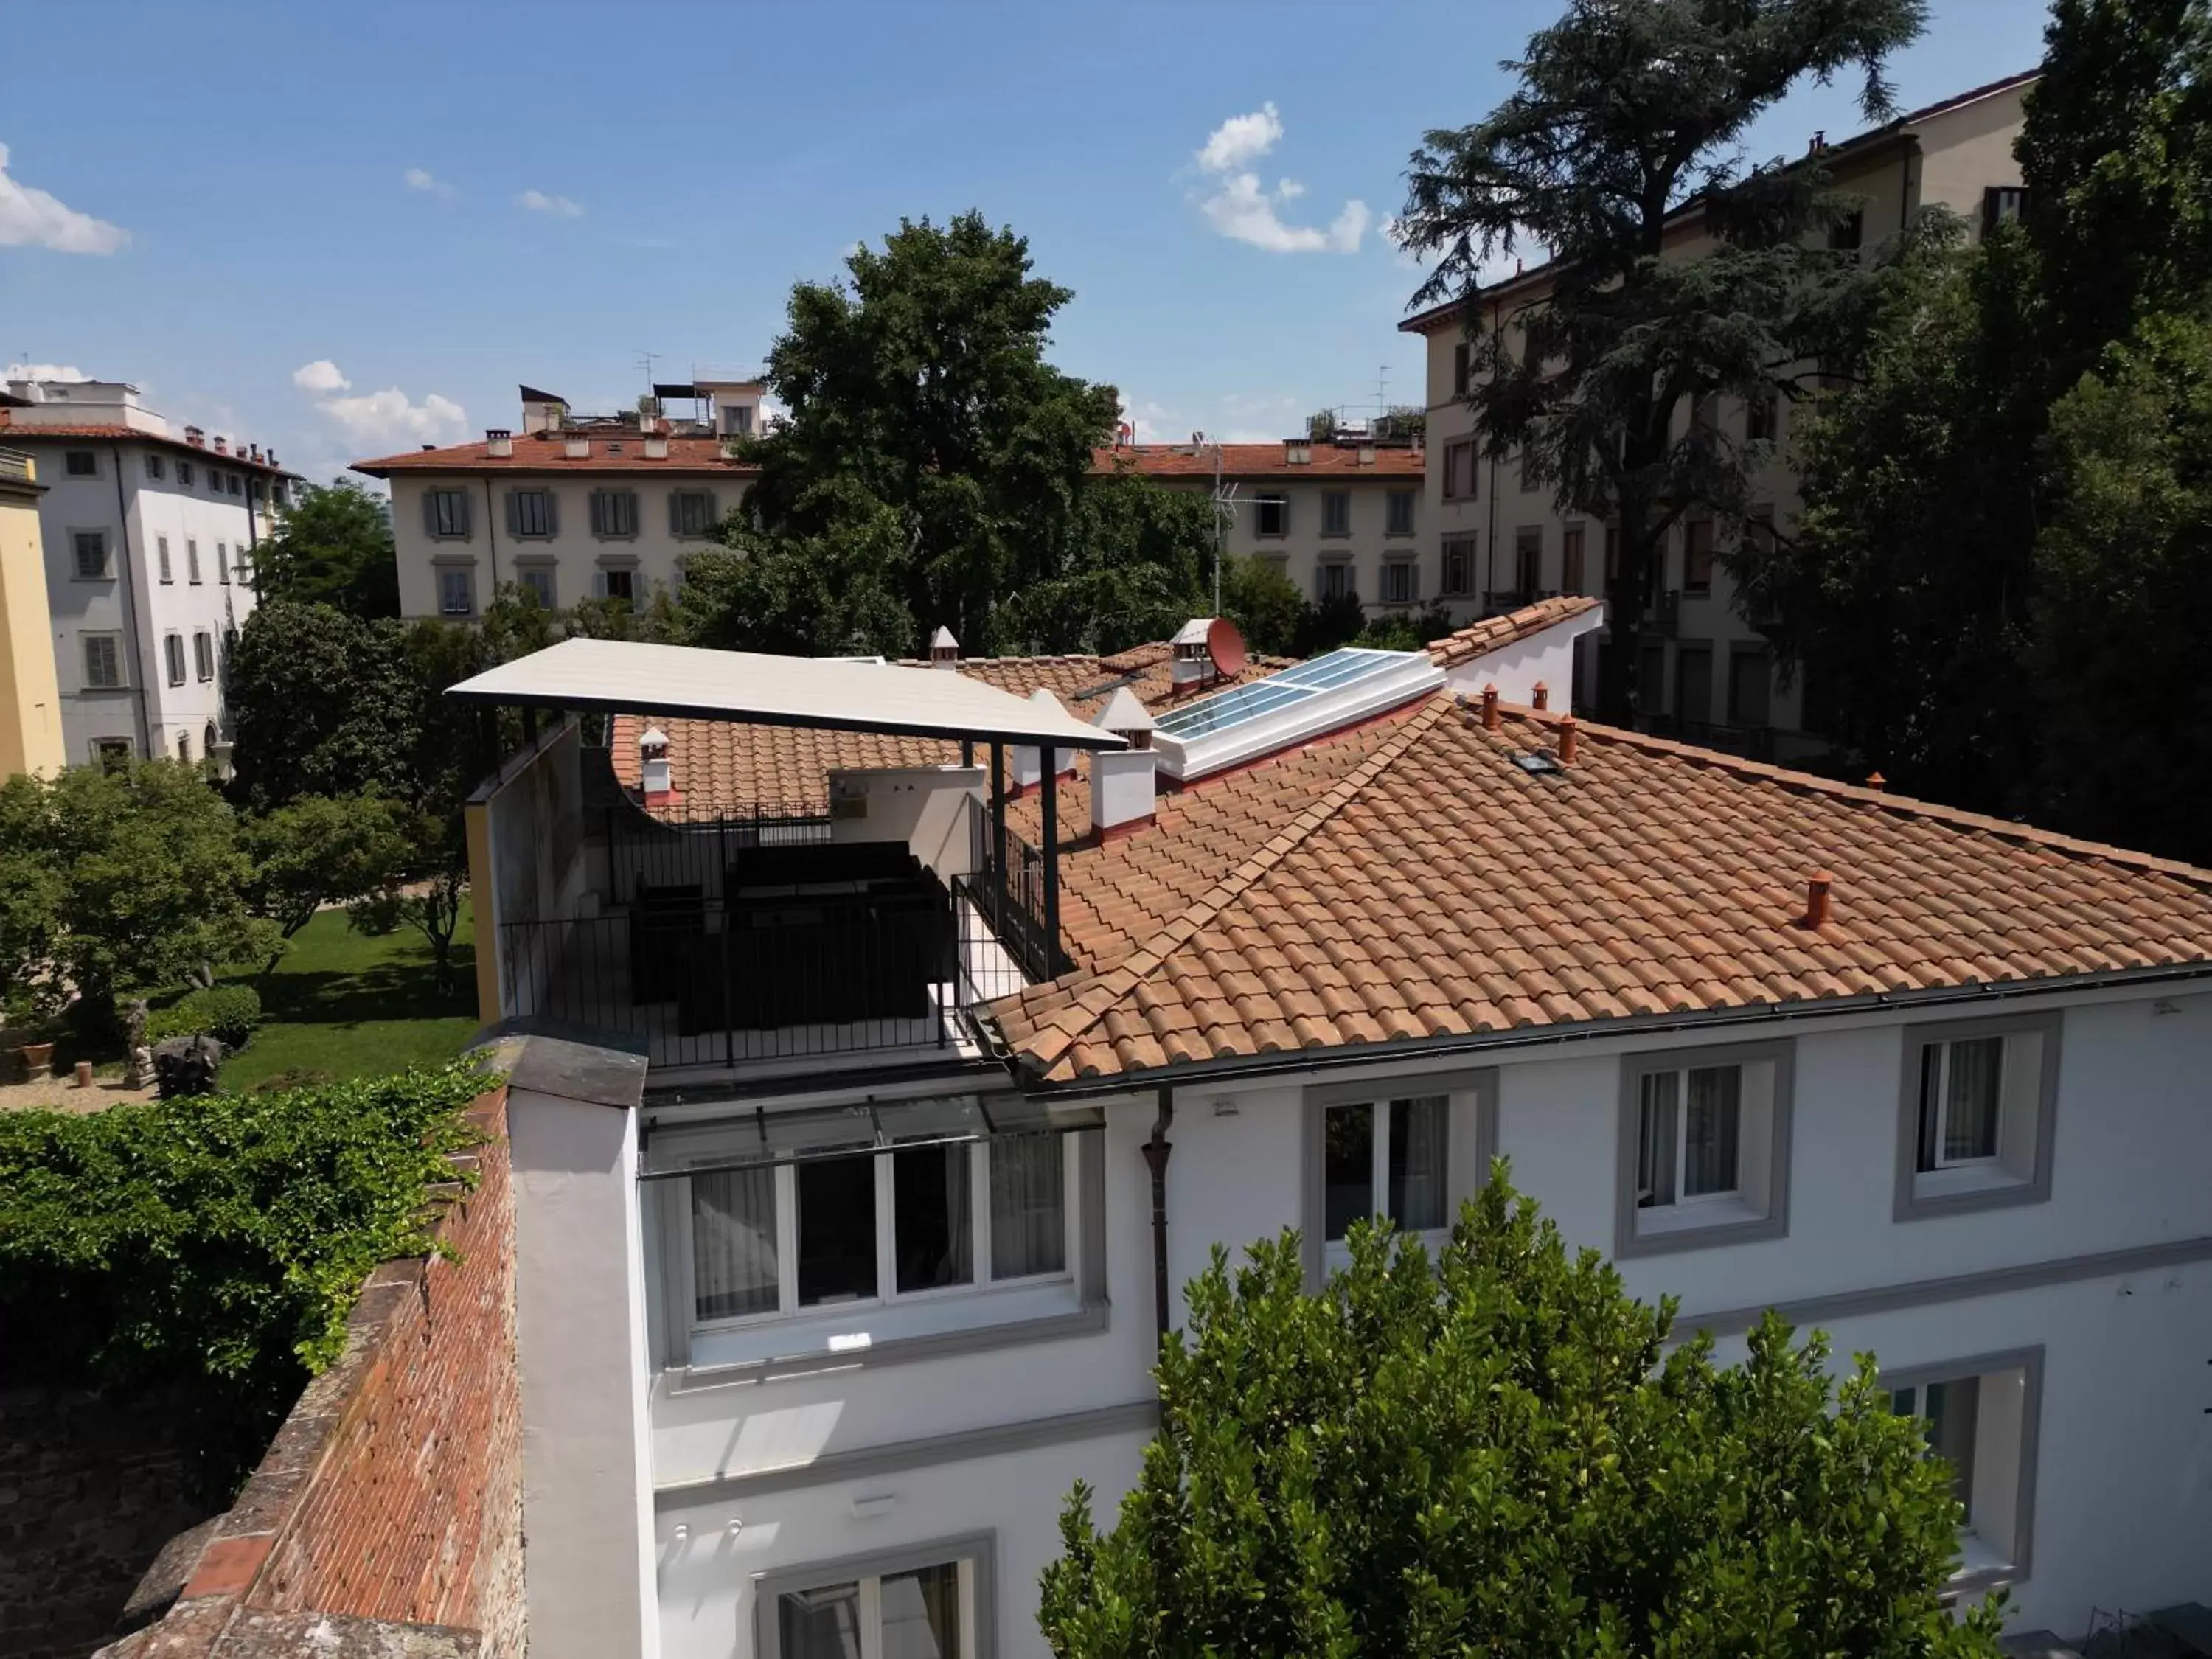 Bird's eye view in Villa Tortorelli